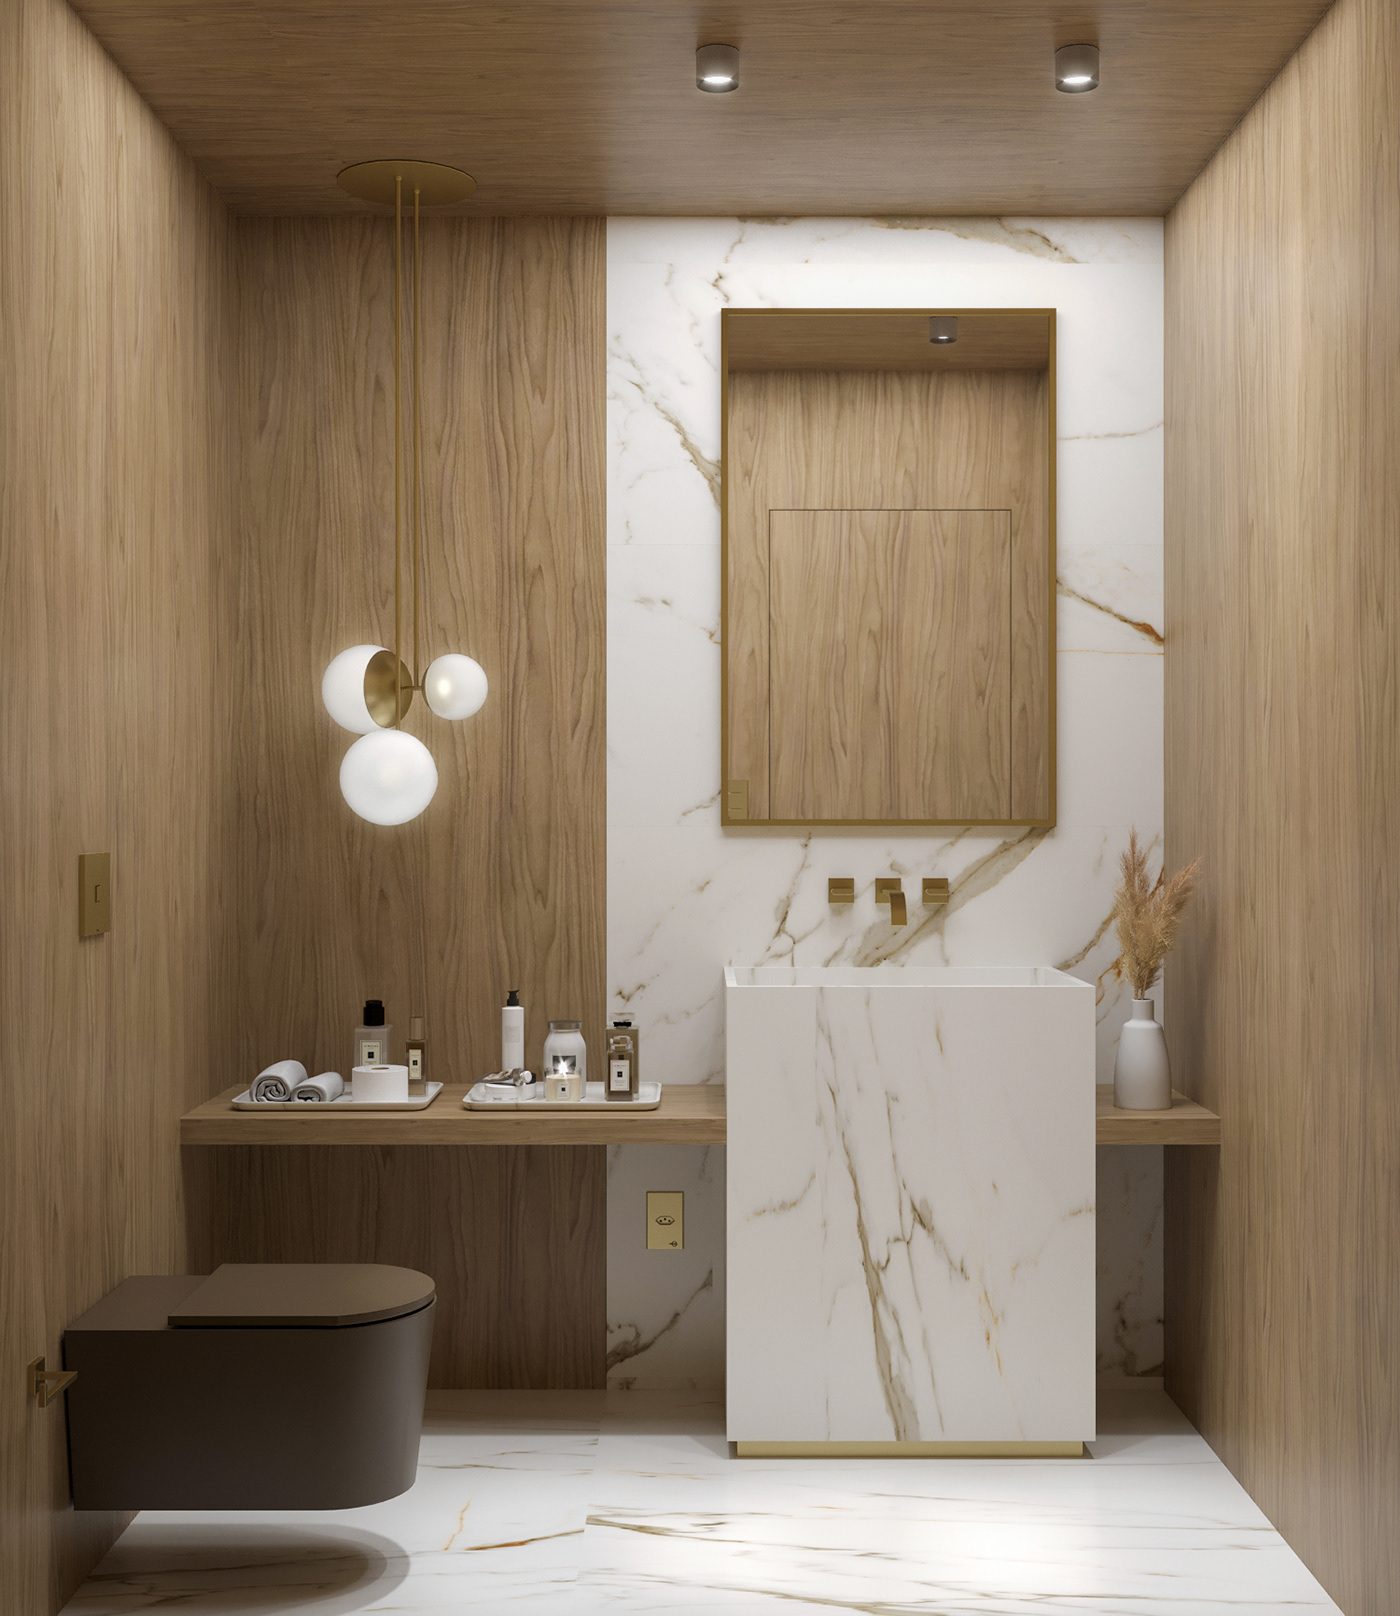 architecture archviz bathroom decor decoration design Interior interior design  Marble toilet